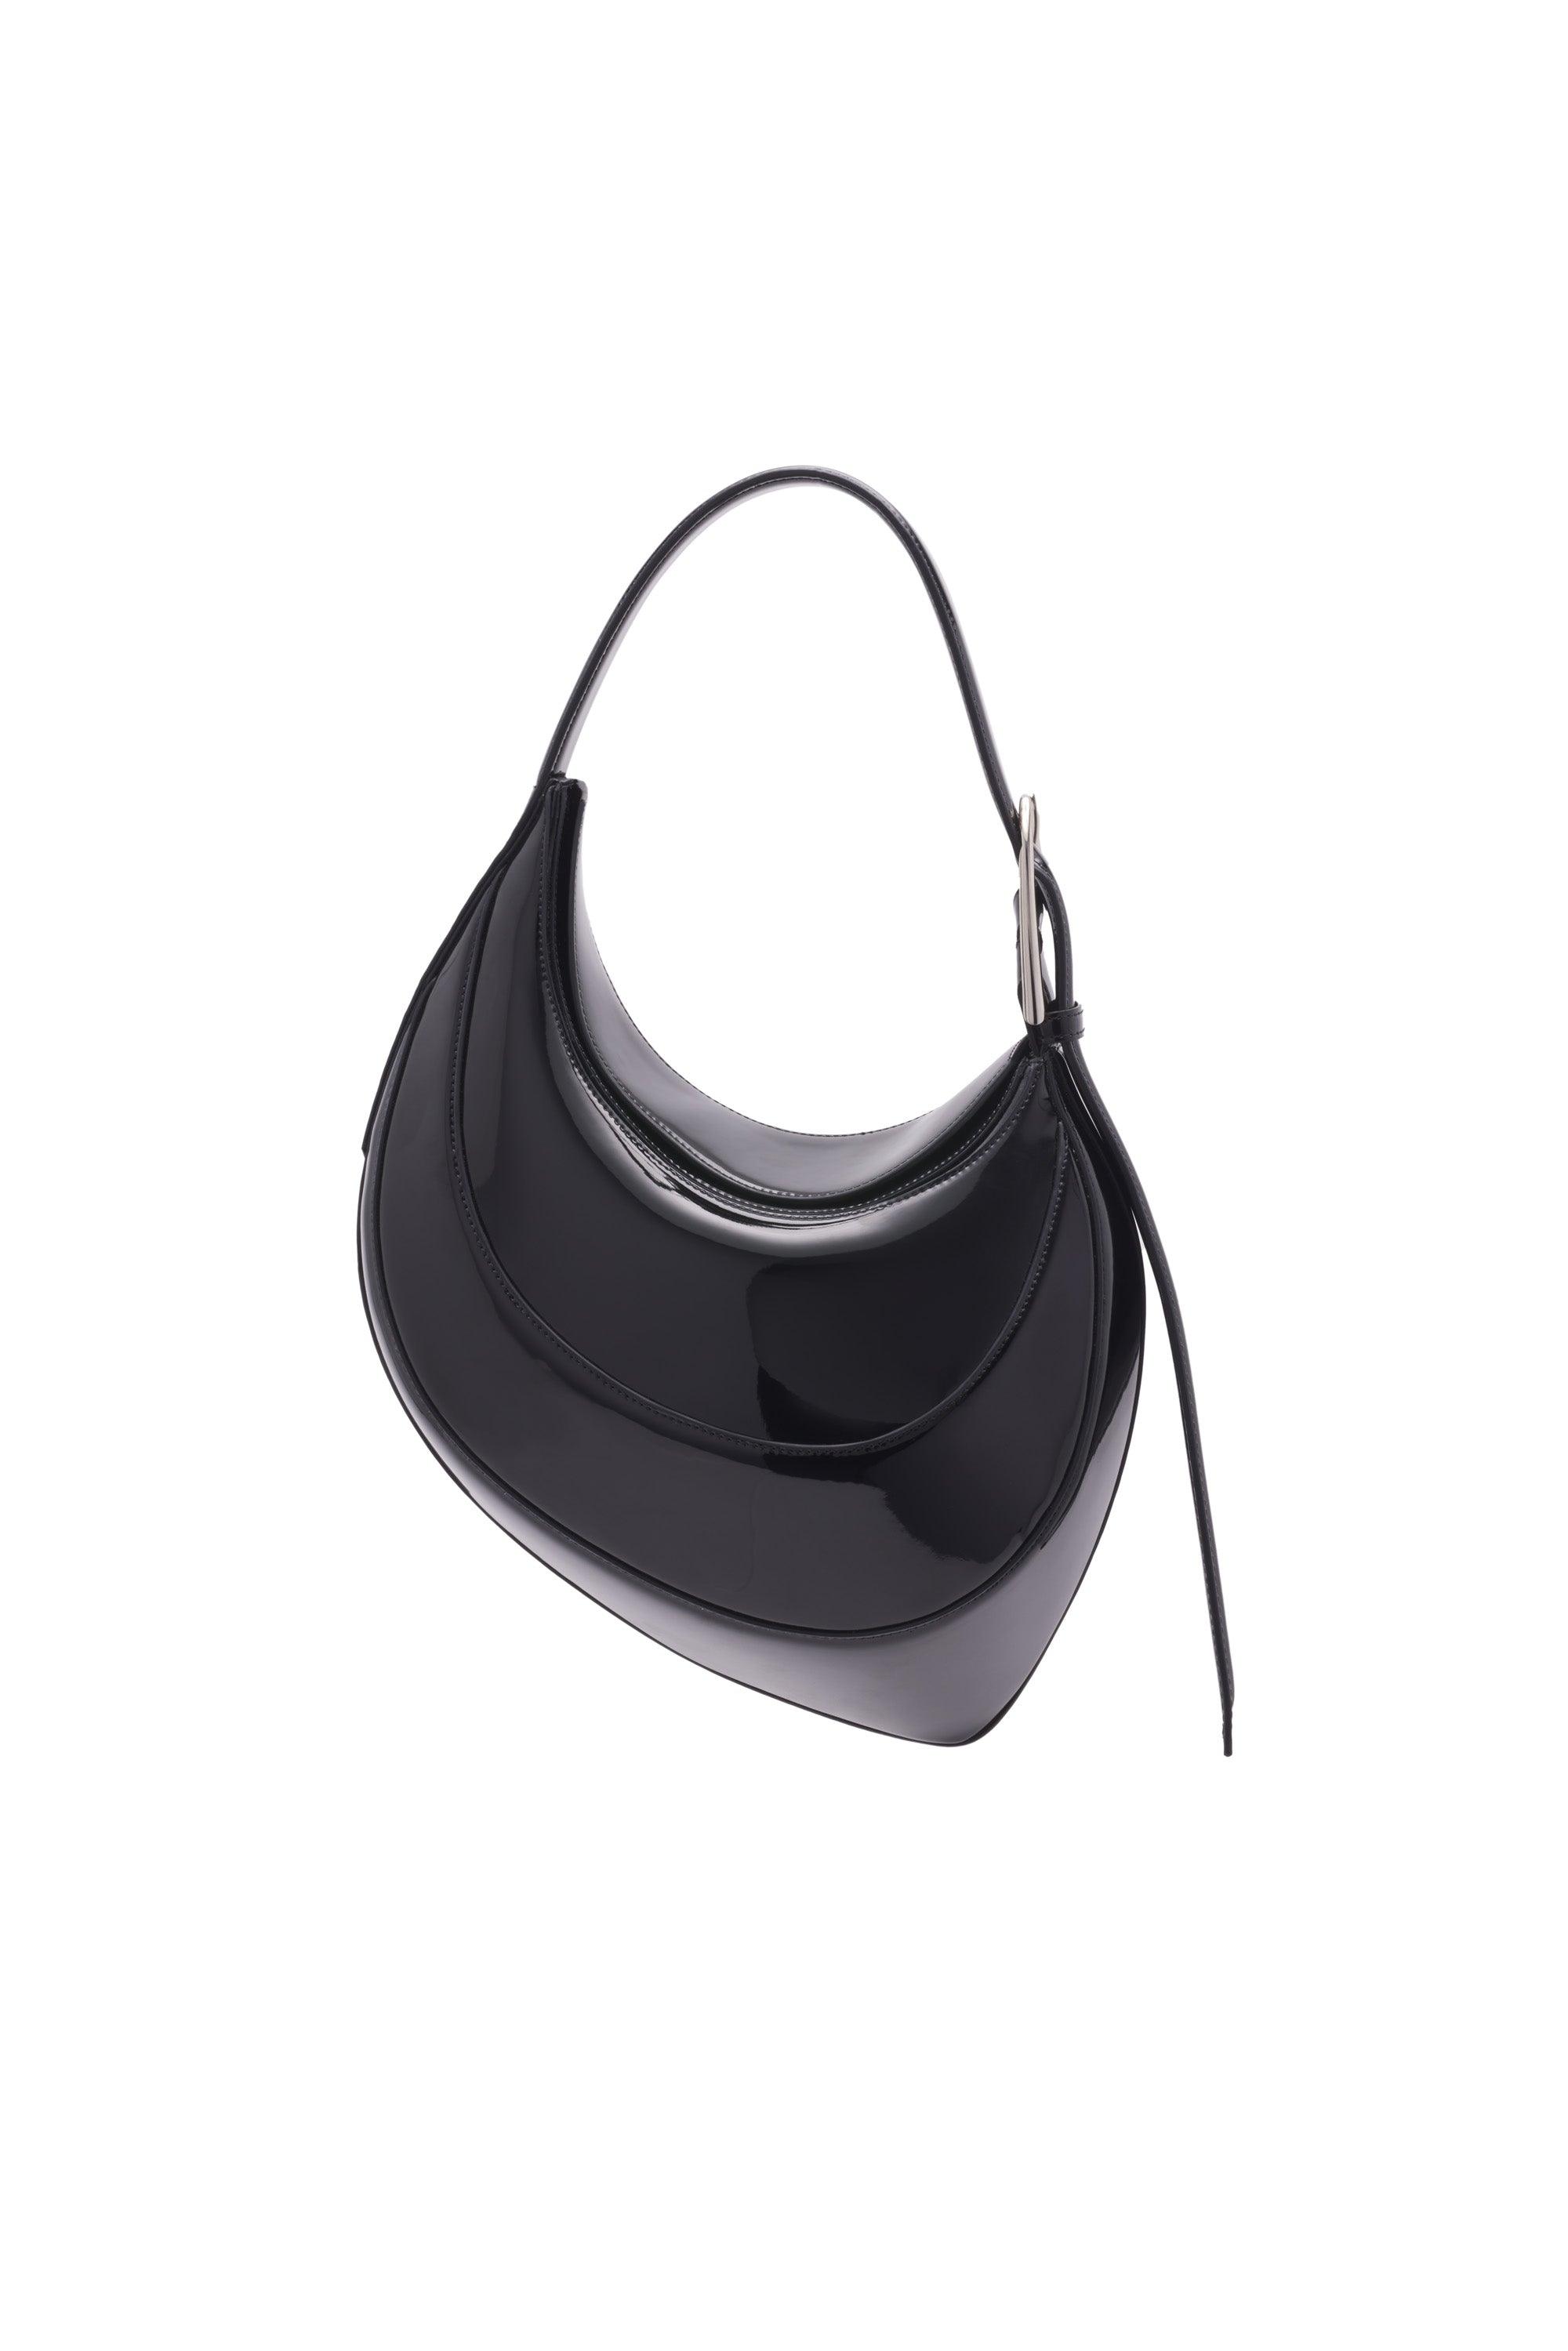 handbags | MUGLER Official Website – Mugler